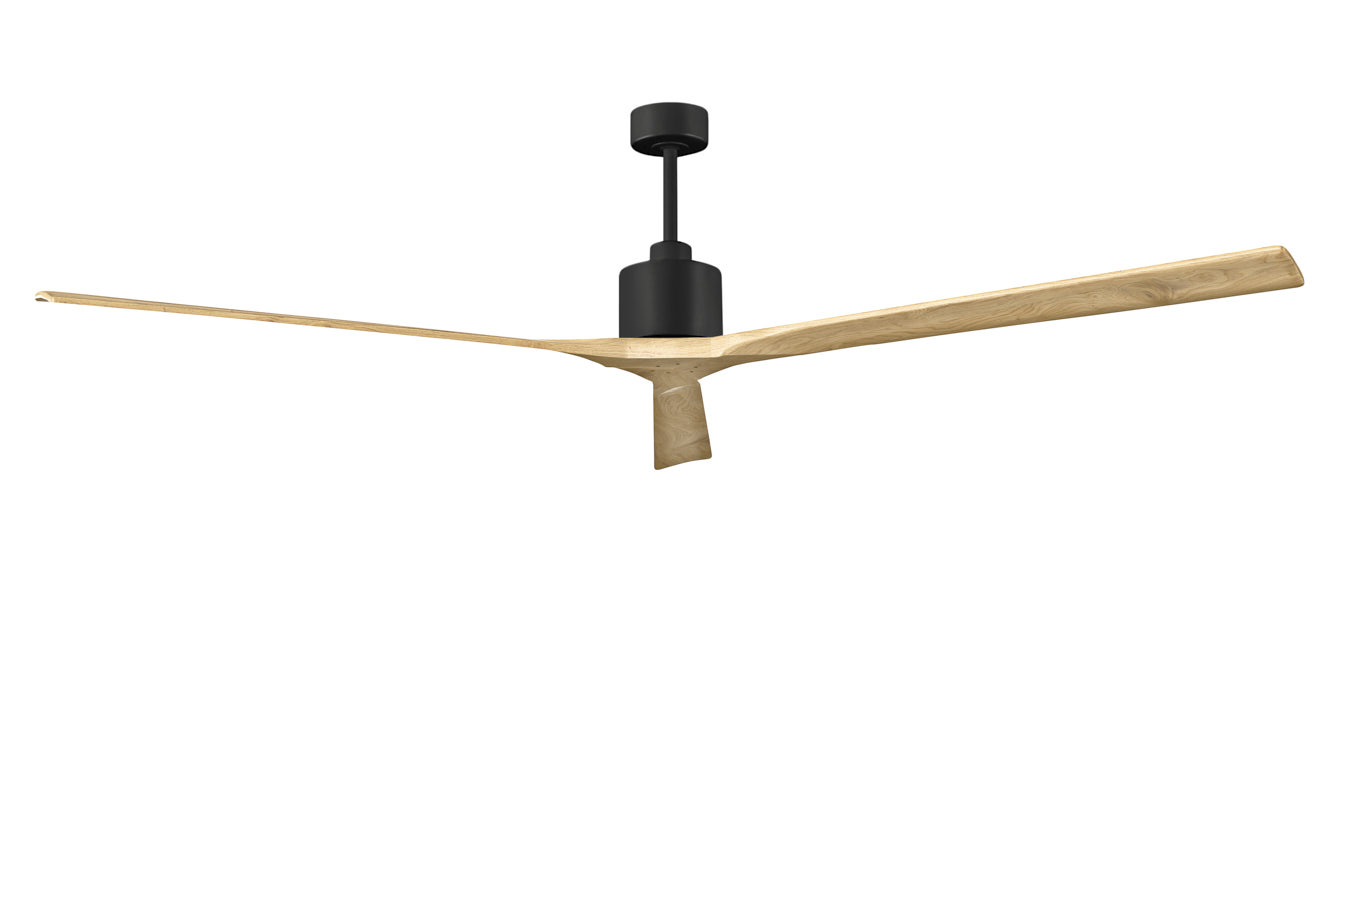 Nan XL ceiling fan in Matte Black with 90” Light Maple blades